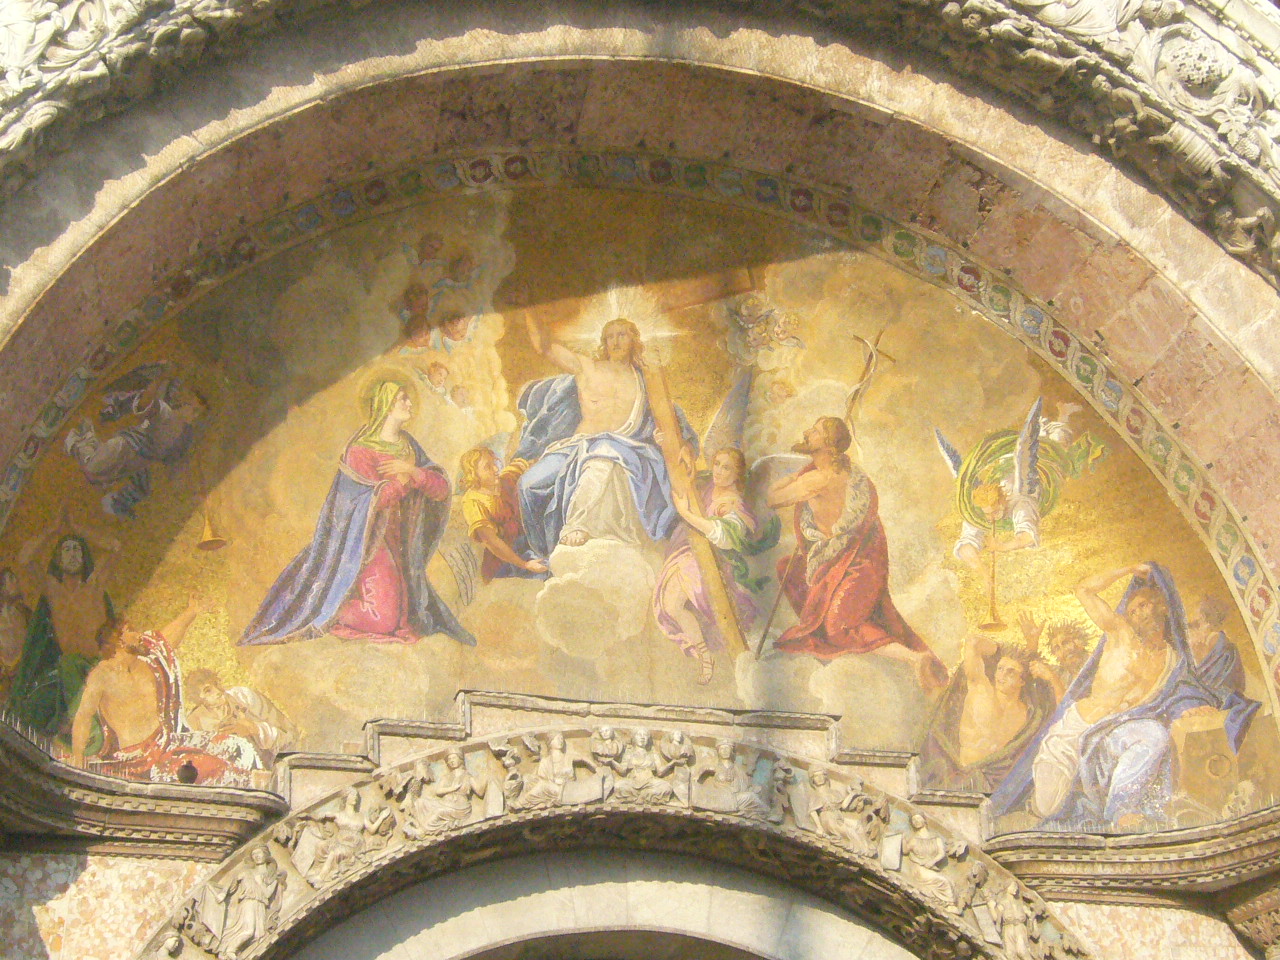 Immagini sacre dai colori dorati all'ingresso principale della Basilica di San Marco